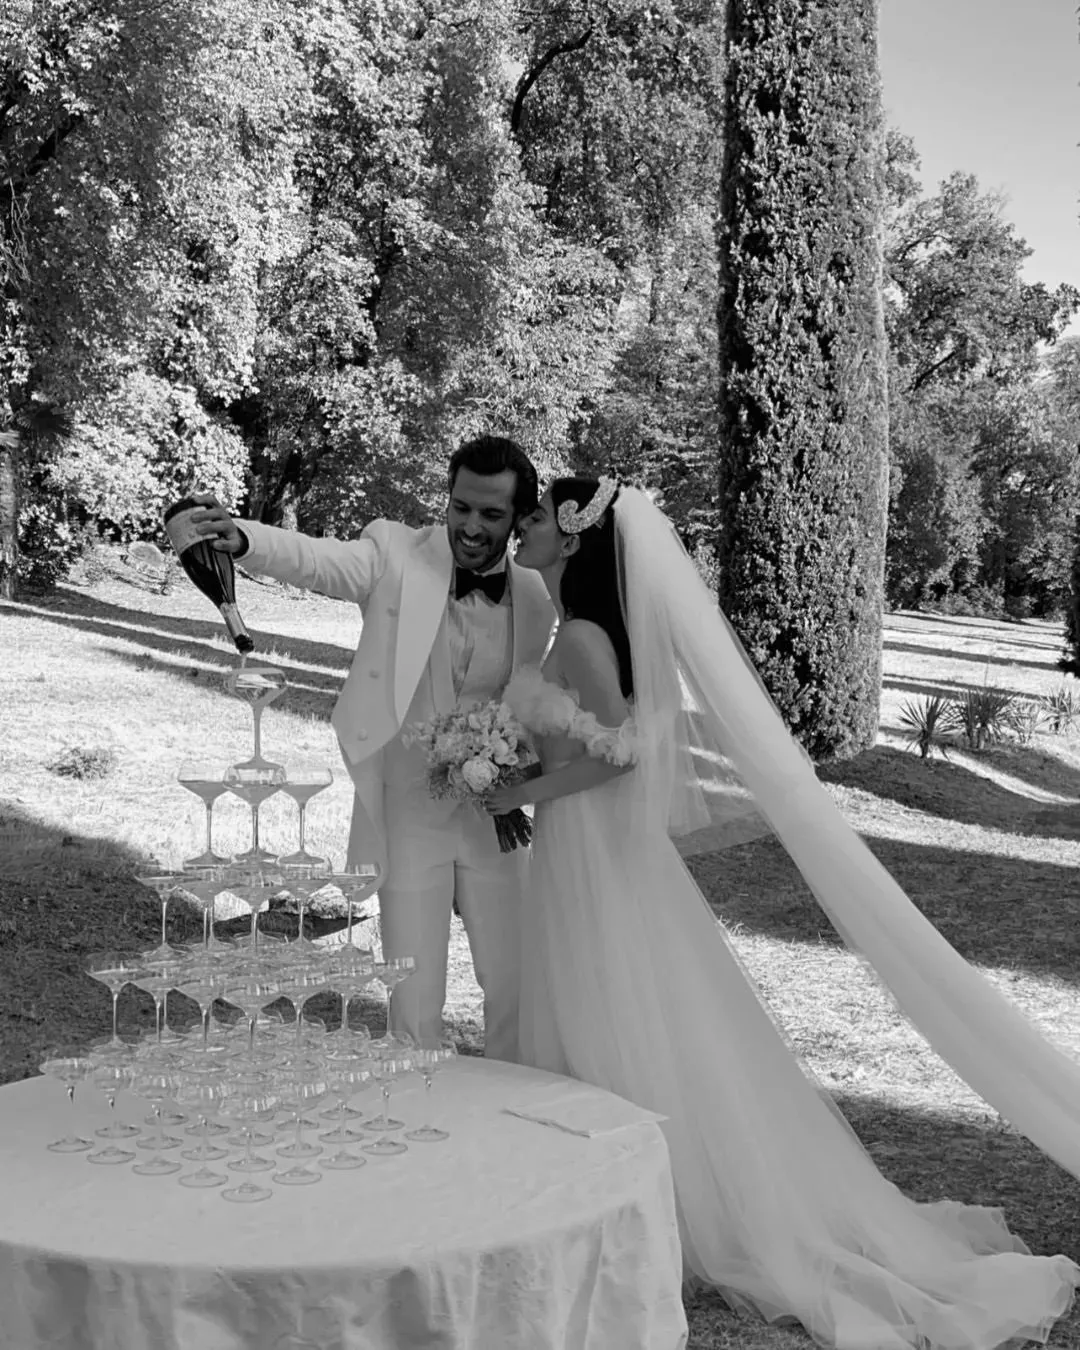 صور زفاف اوزجي جوريل وسيركان تشاي اوغلو في إيطاليا والعروس تطلّ بفستانين